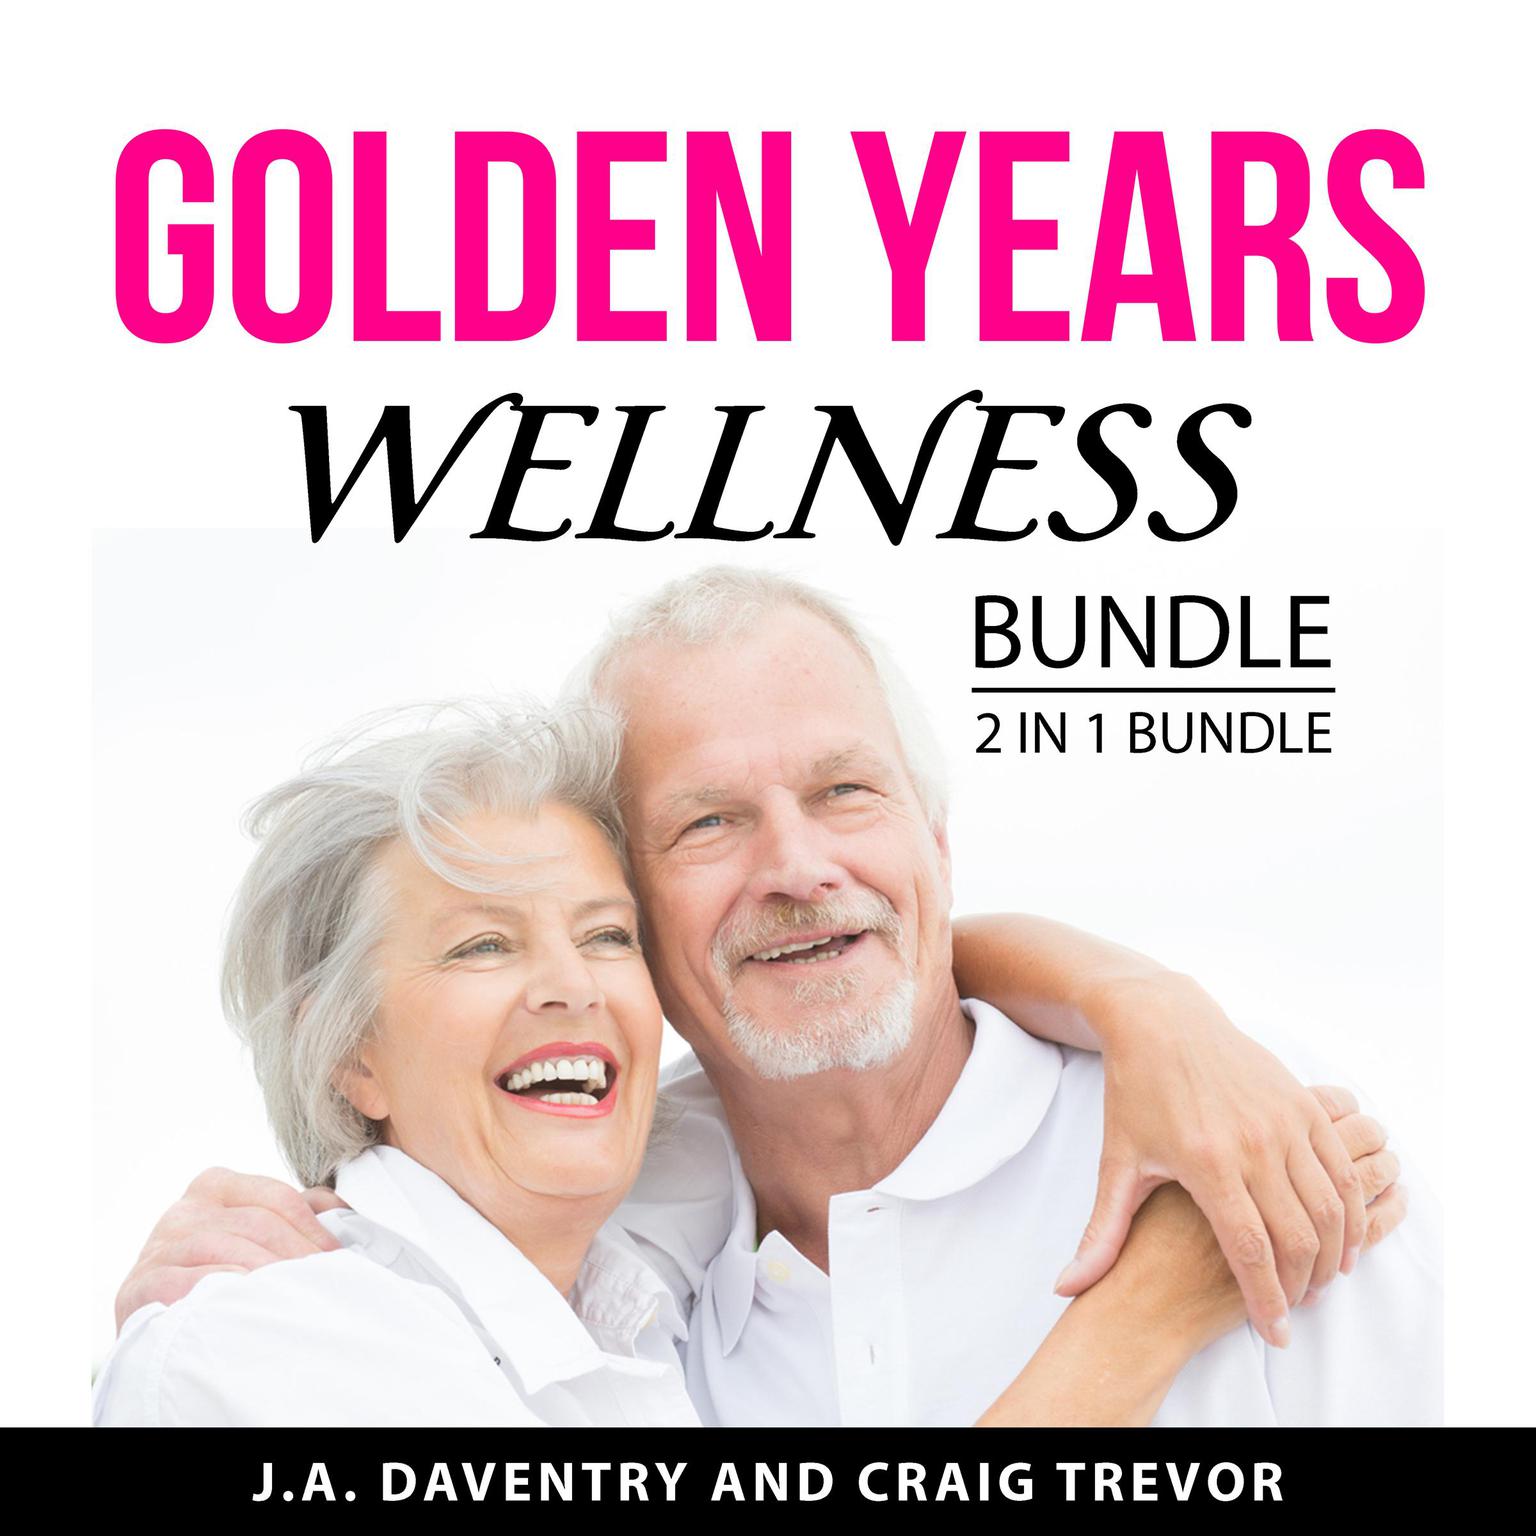 Golden Years Wellness Bundle, 2 in 1 Bundle Audiobook, by Craig Trevor